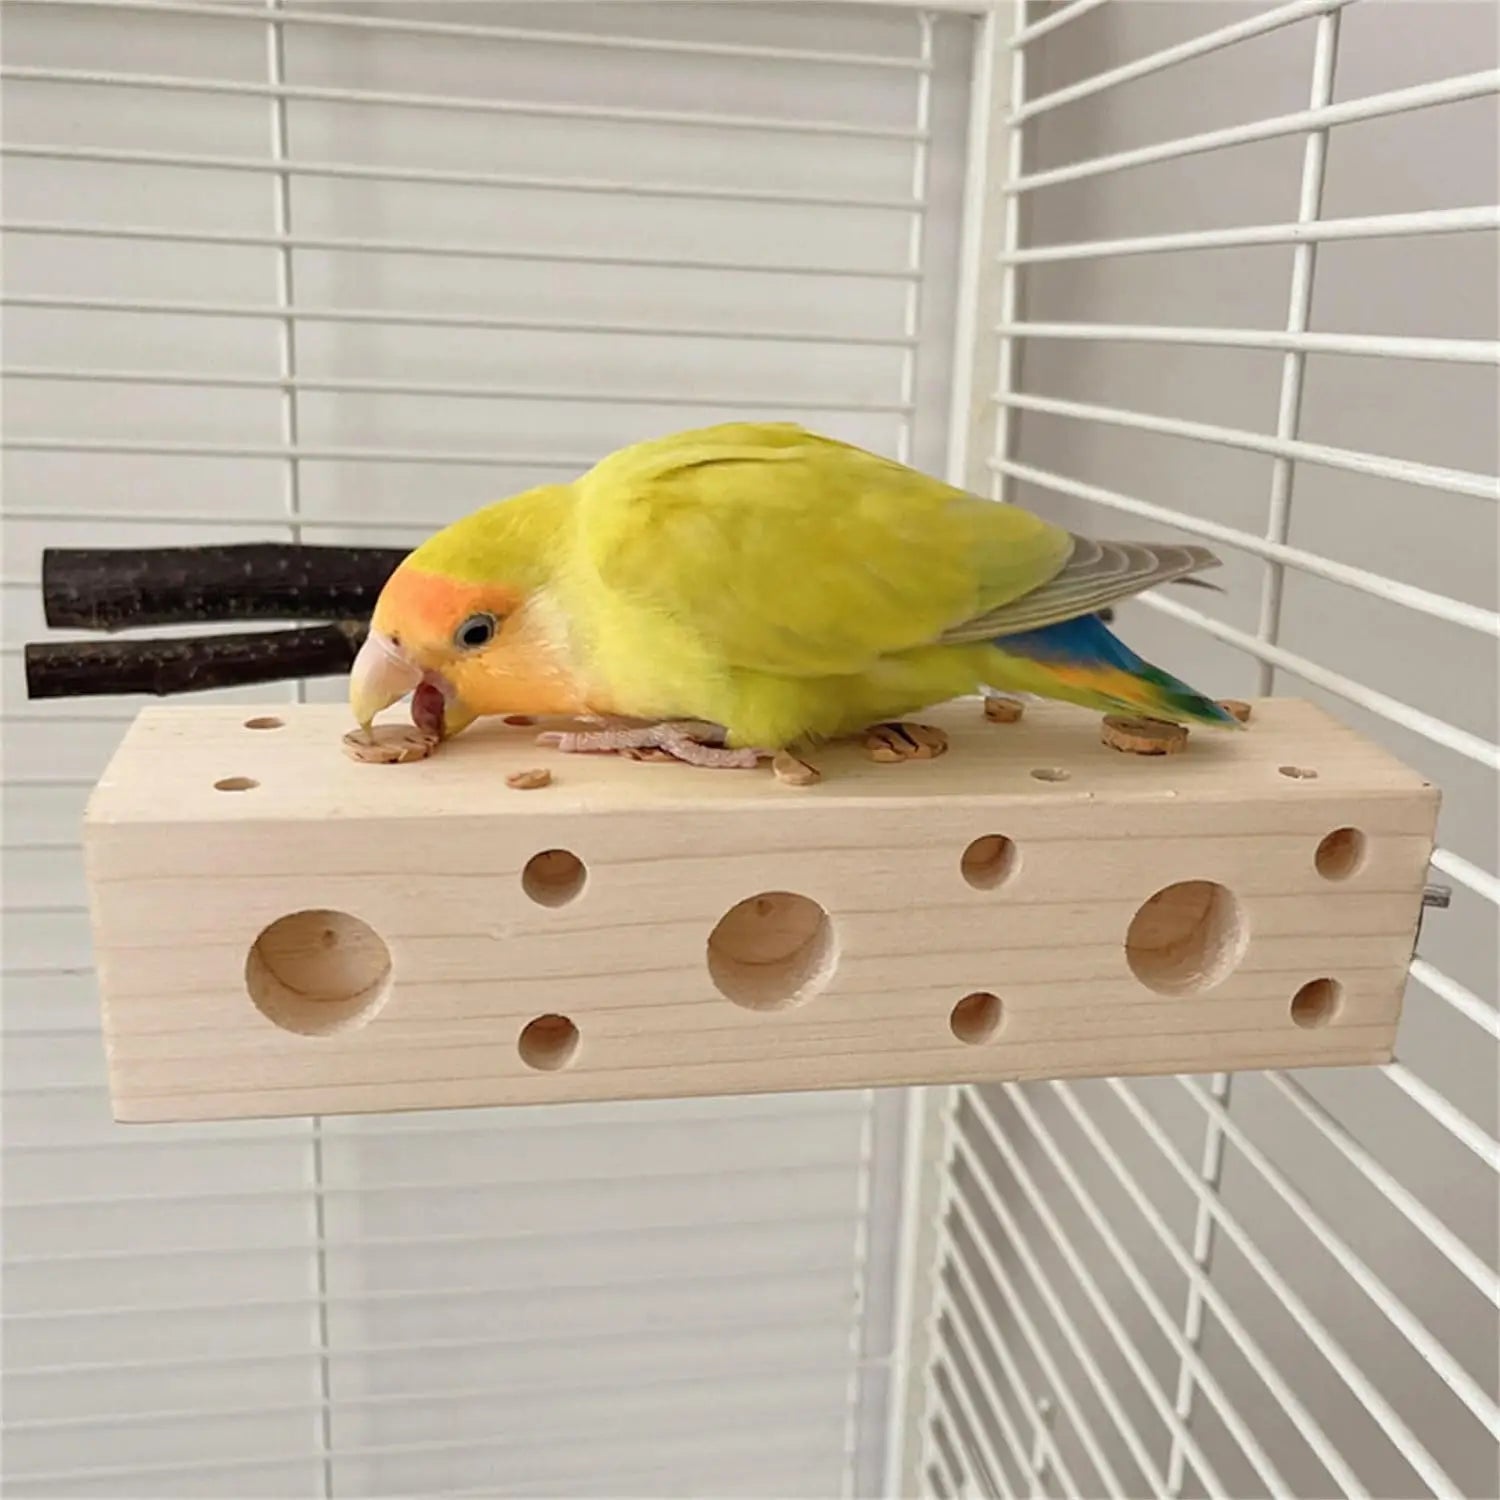 Large bird biting toy